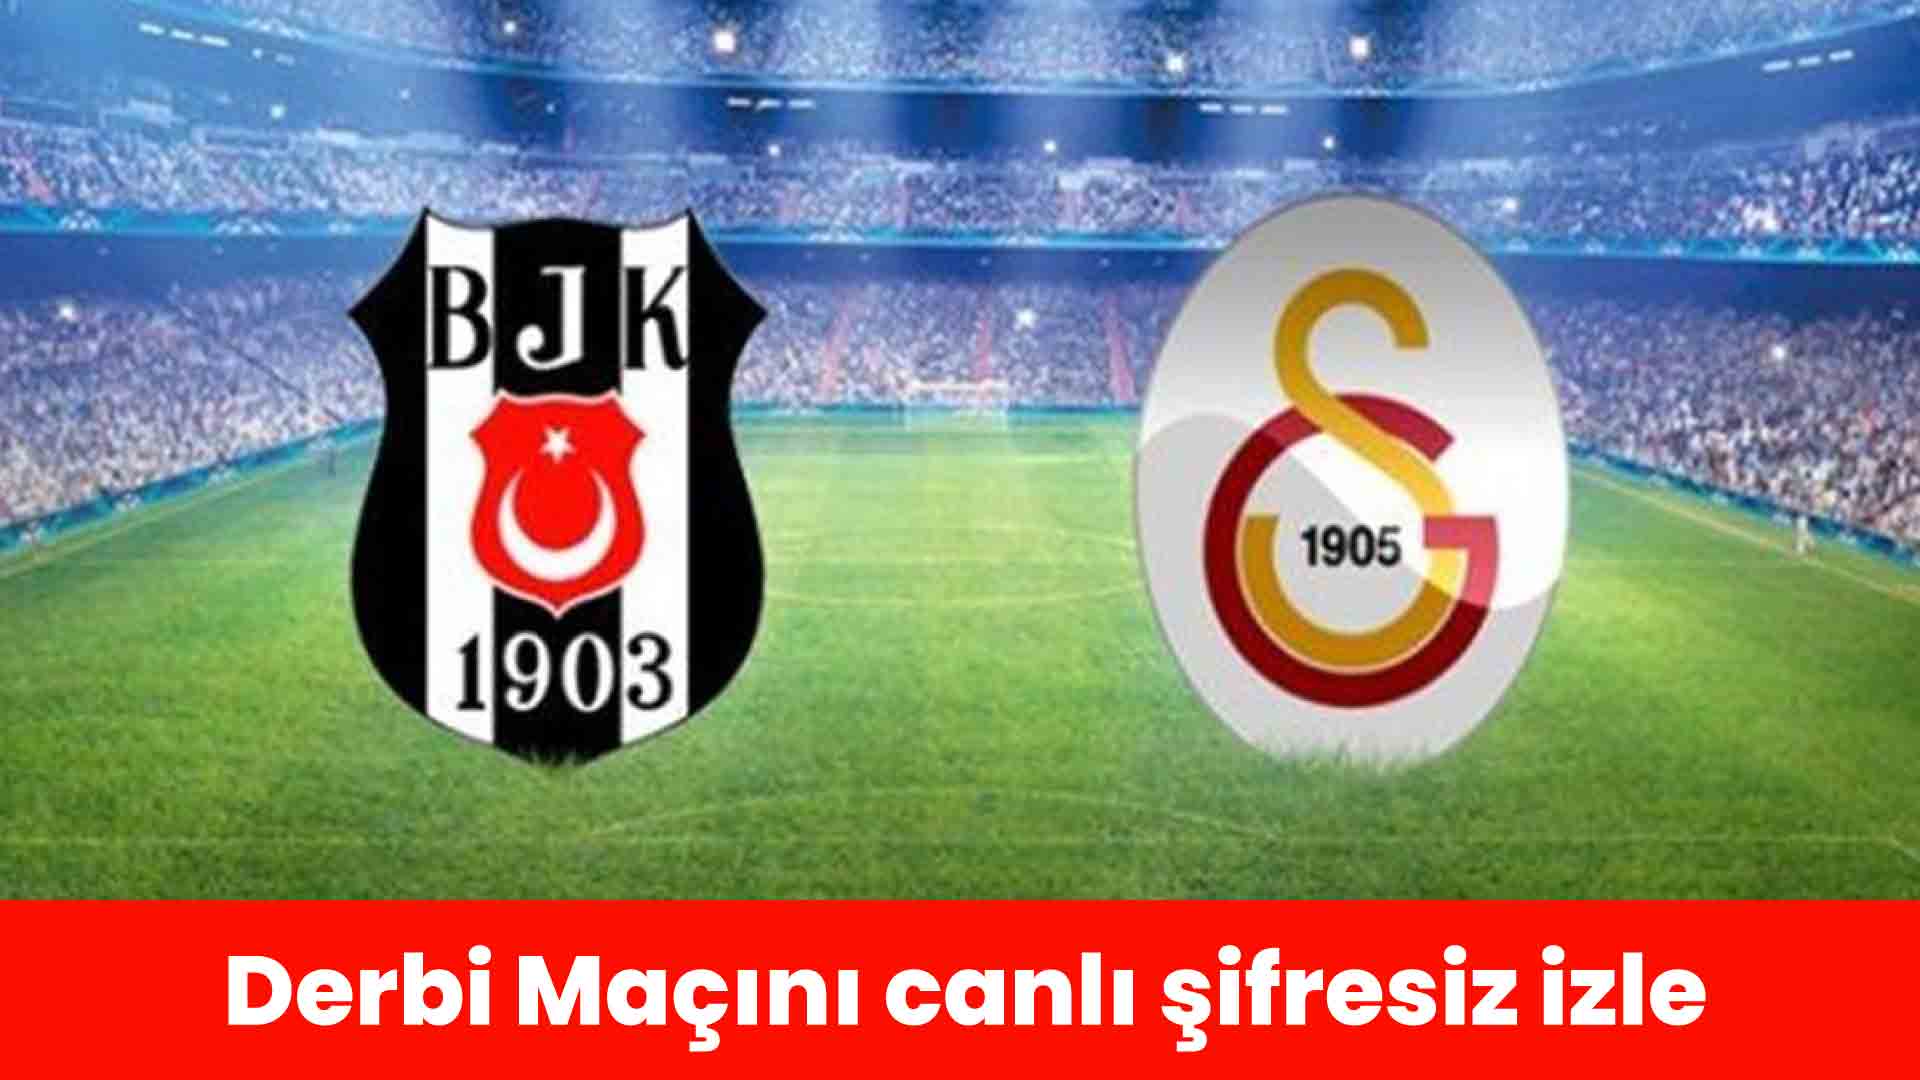 Beşiktaş Galatasaray maçı canlı izle, Bein sports 1 şifresiz izle, Matbet TV